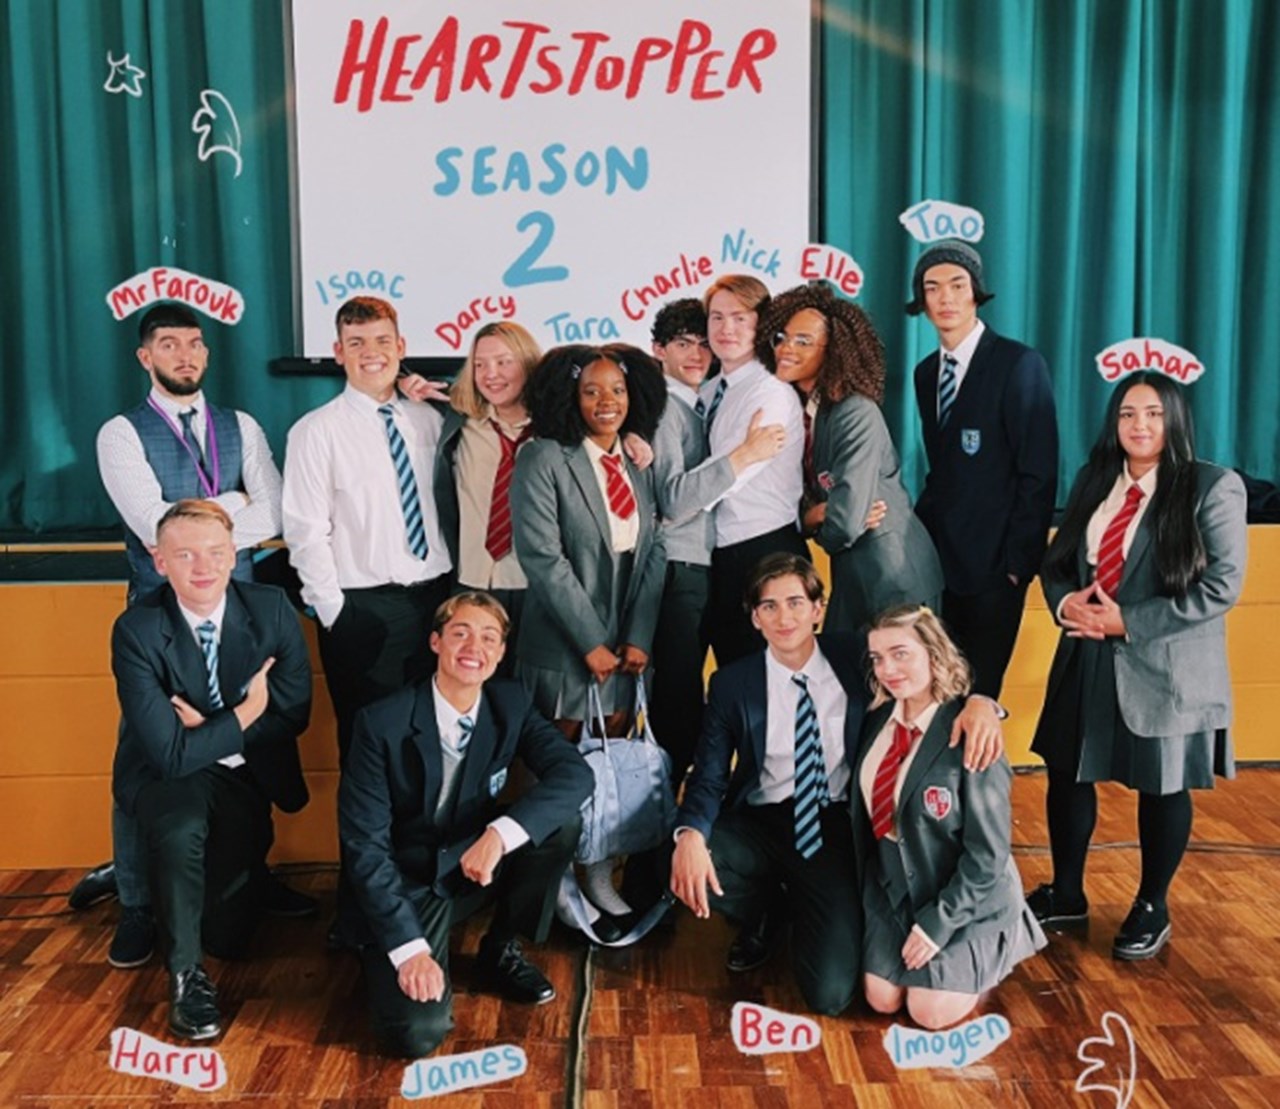 Heartstopper Season 2: Cast, Release Date, Trailer